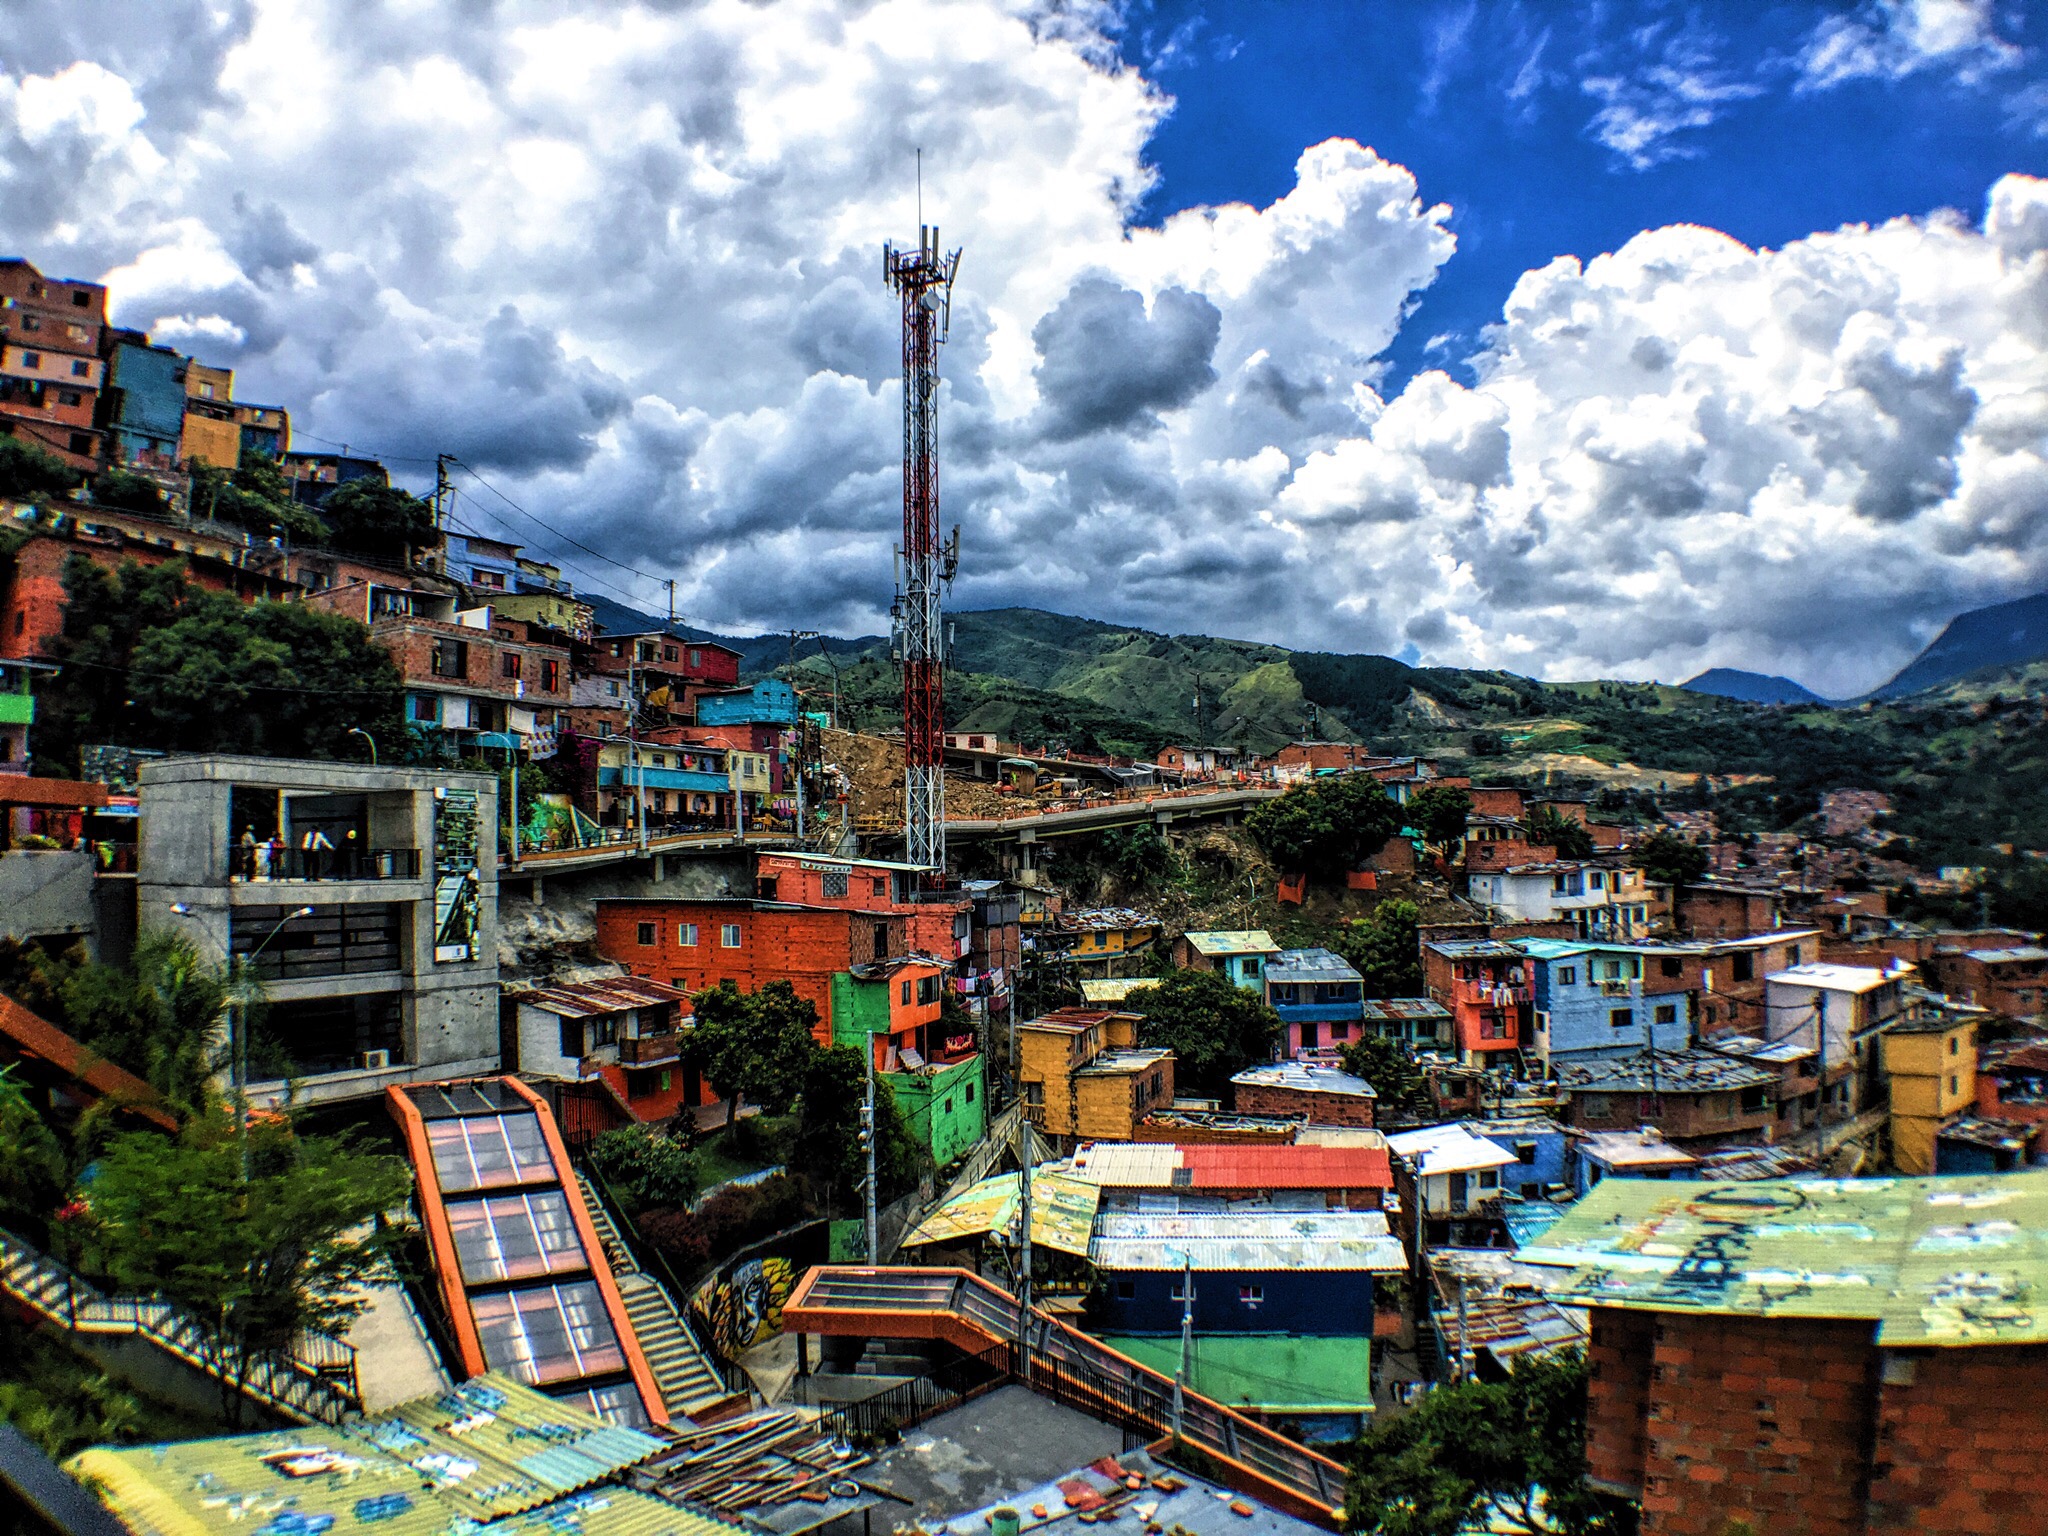 Colorful Comuna 13 In Medellin, Colombia - Comuna 13 Medellin , HD Wallpaper & Backgrounds